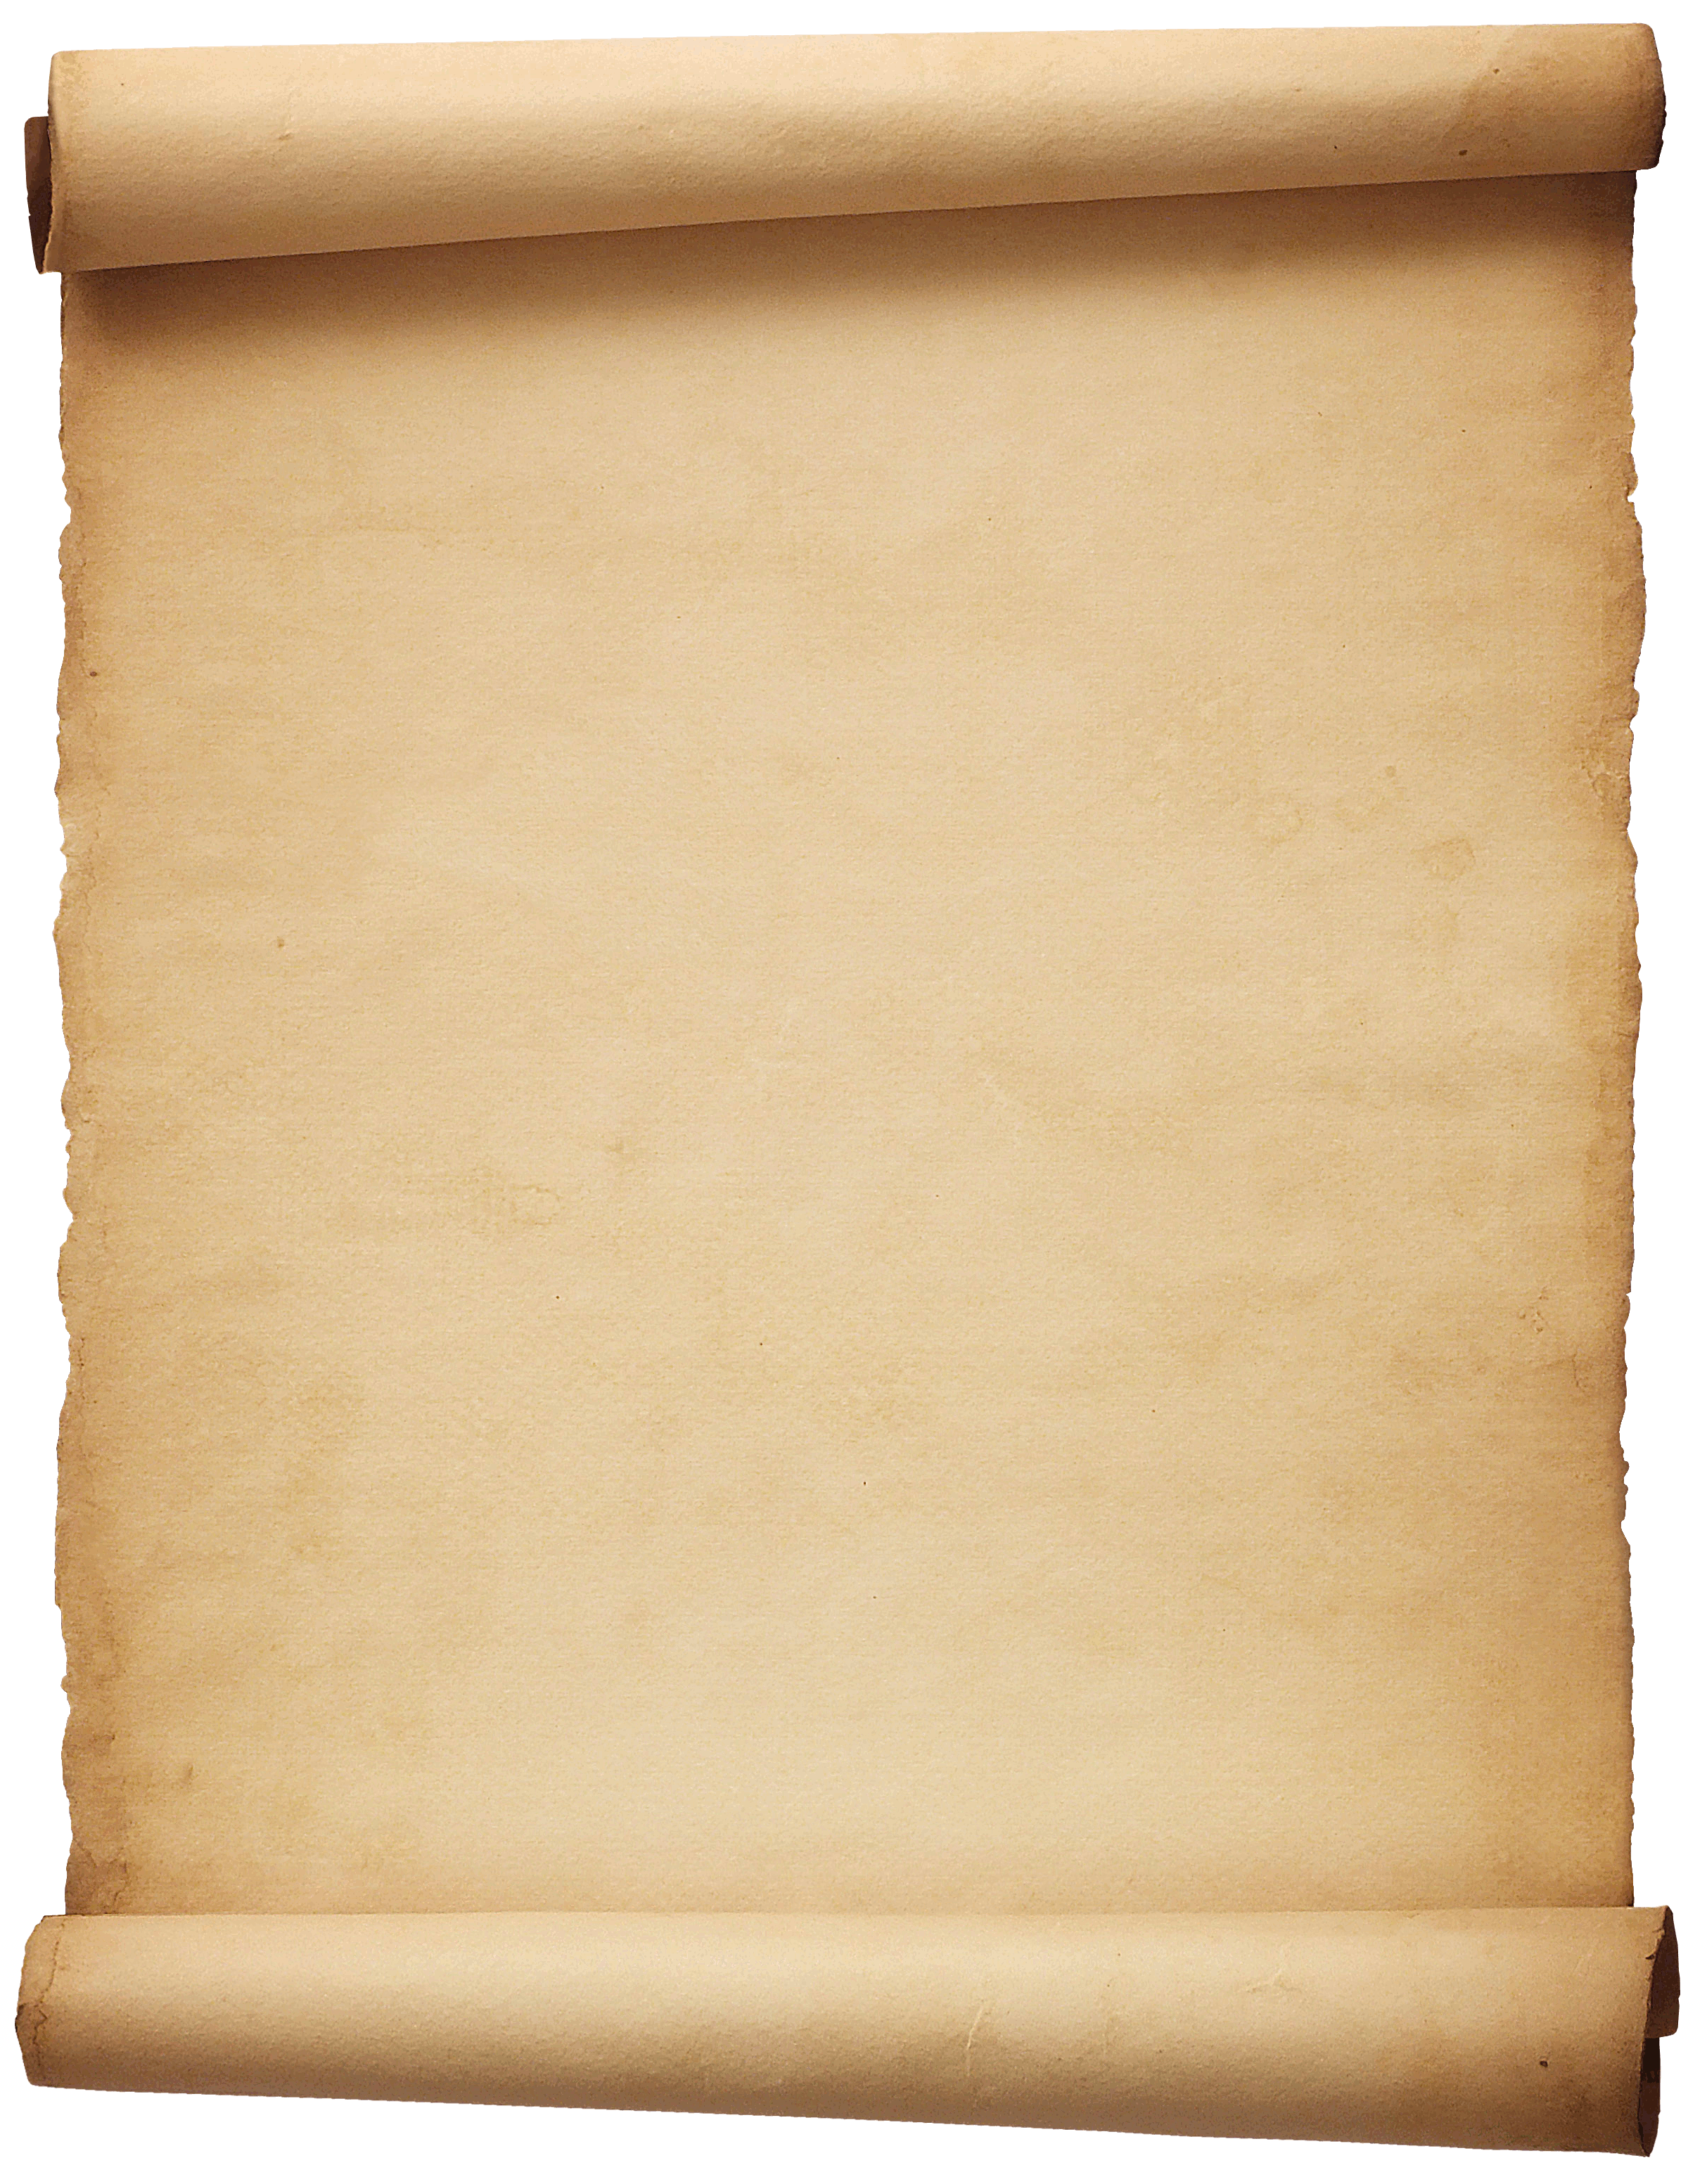 Перманентная бумага. Развернутый свиток. Свиток бумаги. Старый лист бумаги. Летопись на пергаменте.